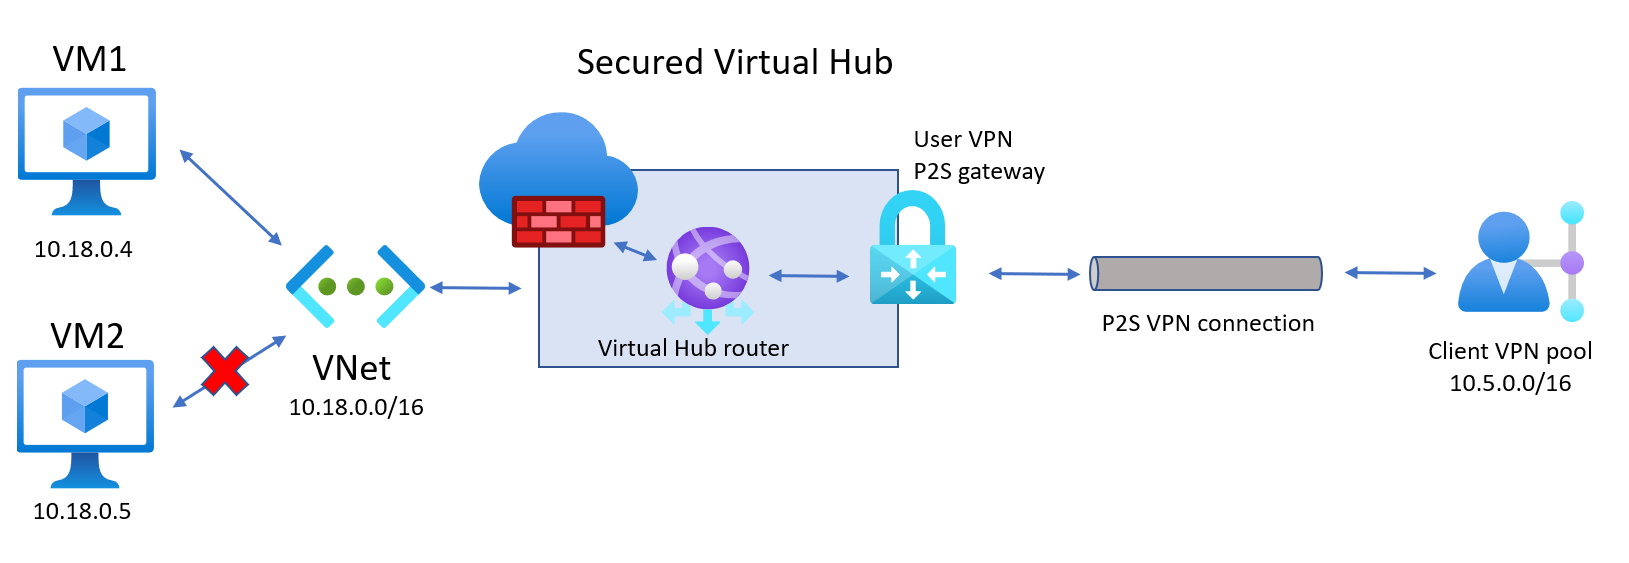 Diagramme d’un hub virtuel sécurisé.